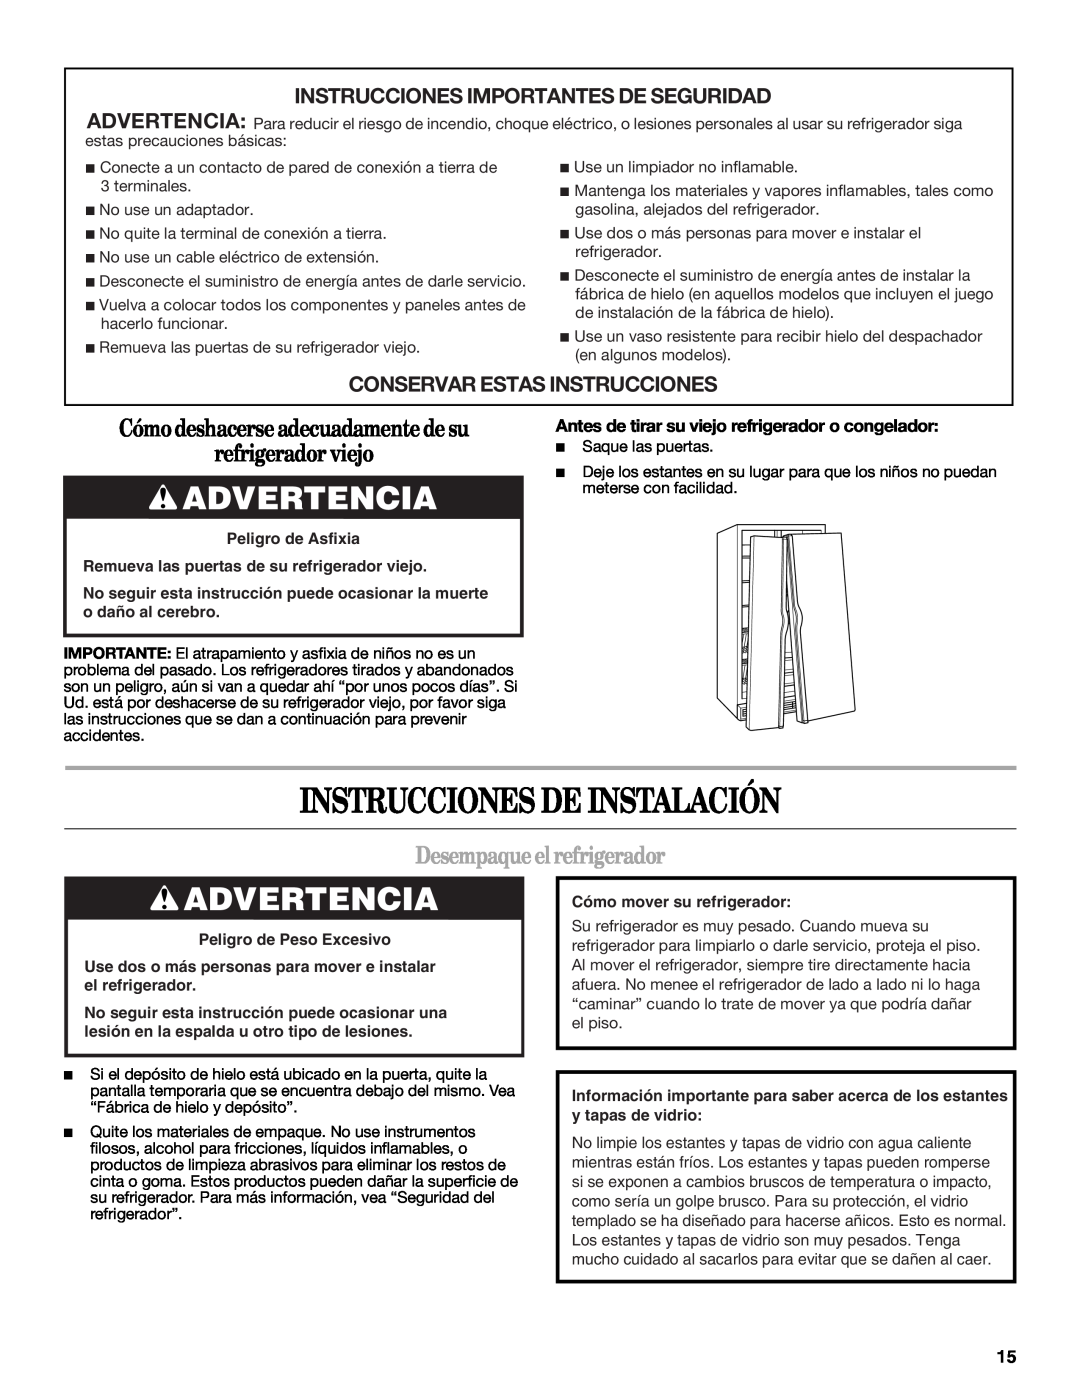 Whirlpool ES2FHAXSA00 Instrucciones De Instalación, Advertencia, Cómodeshacerseadecuadamentedesu refrigerador viejo 